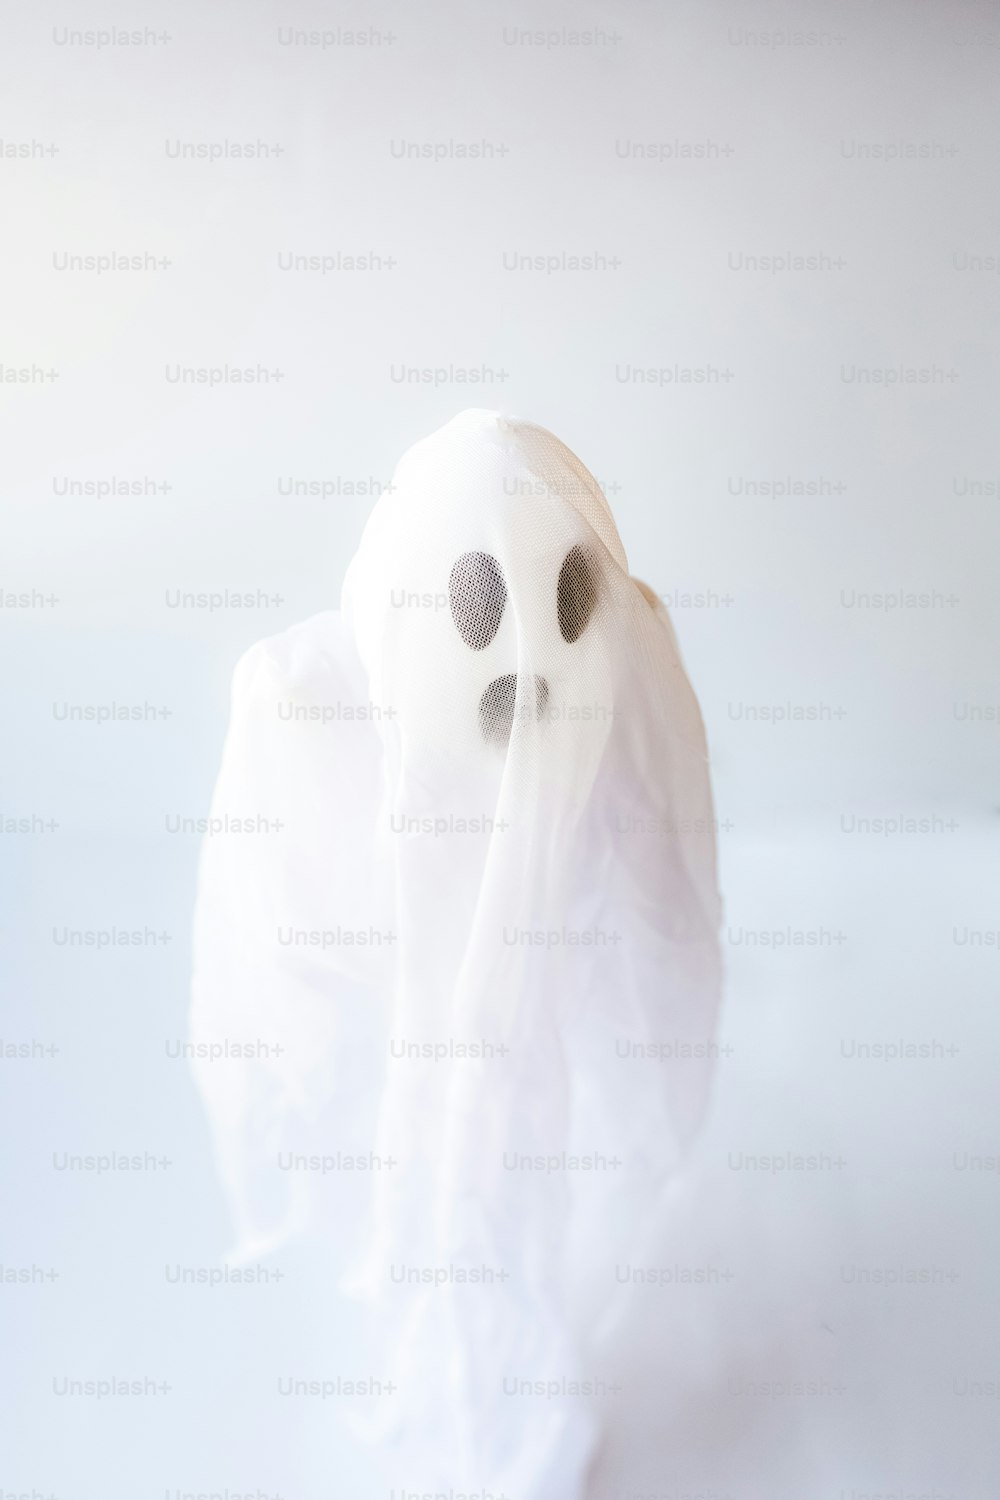 Un fantôme blanc avec un nez et des yeux noirs